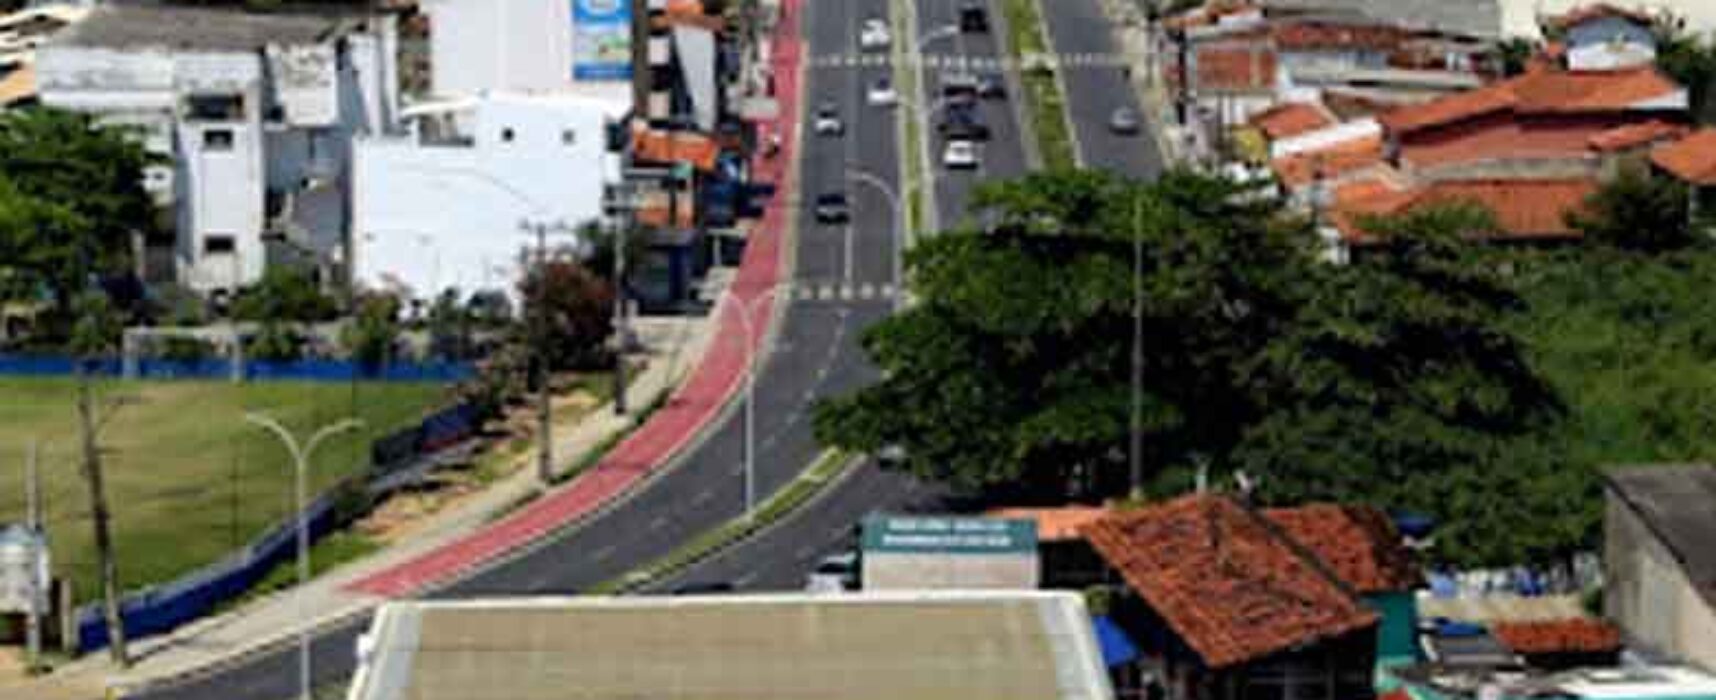 Hoje, terça-feira, 09, acontece o descerramento da placa da Avenida Vereador Ruy Carvalho